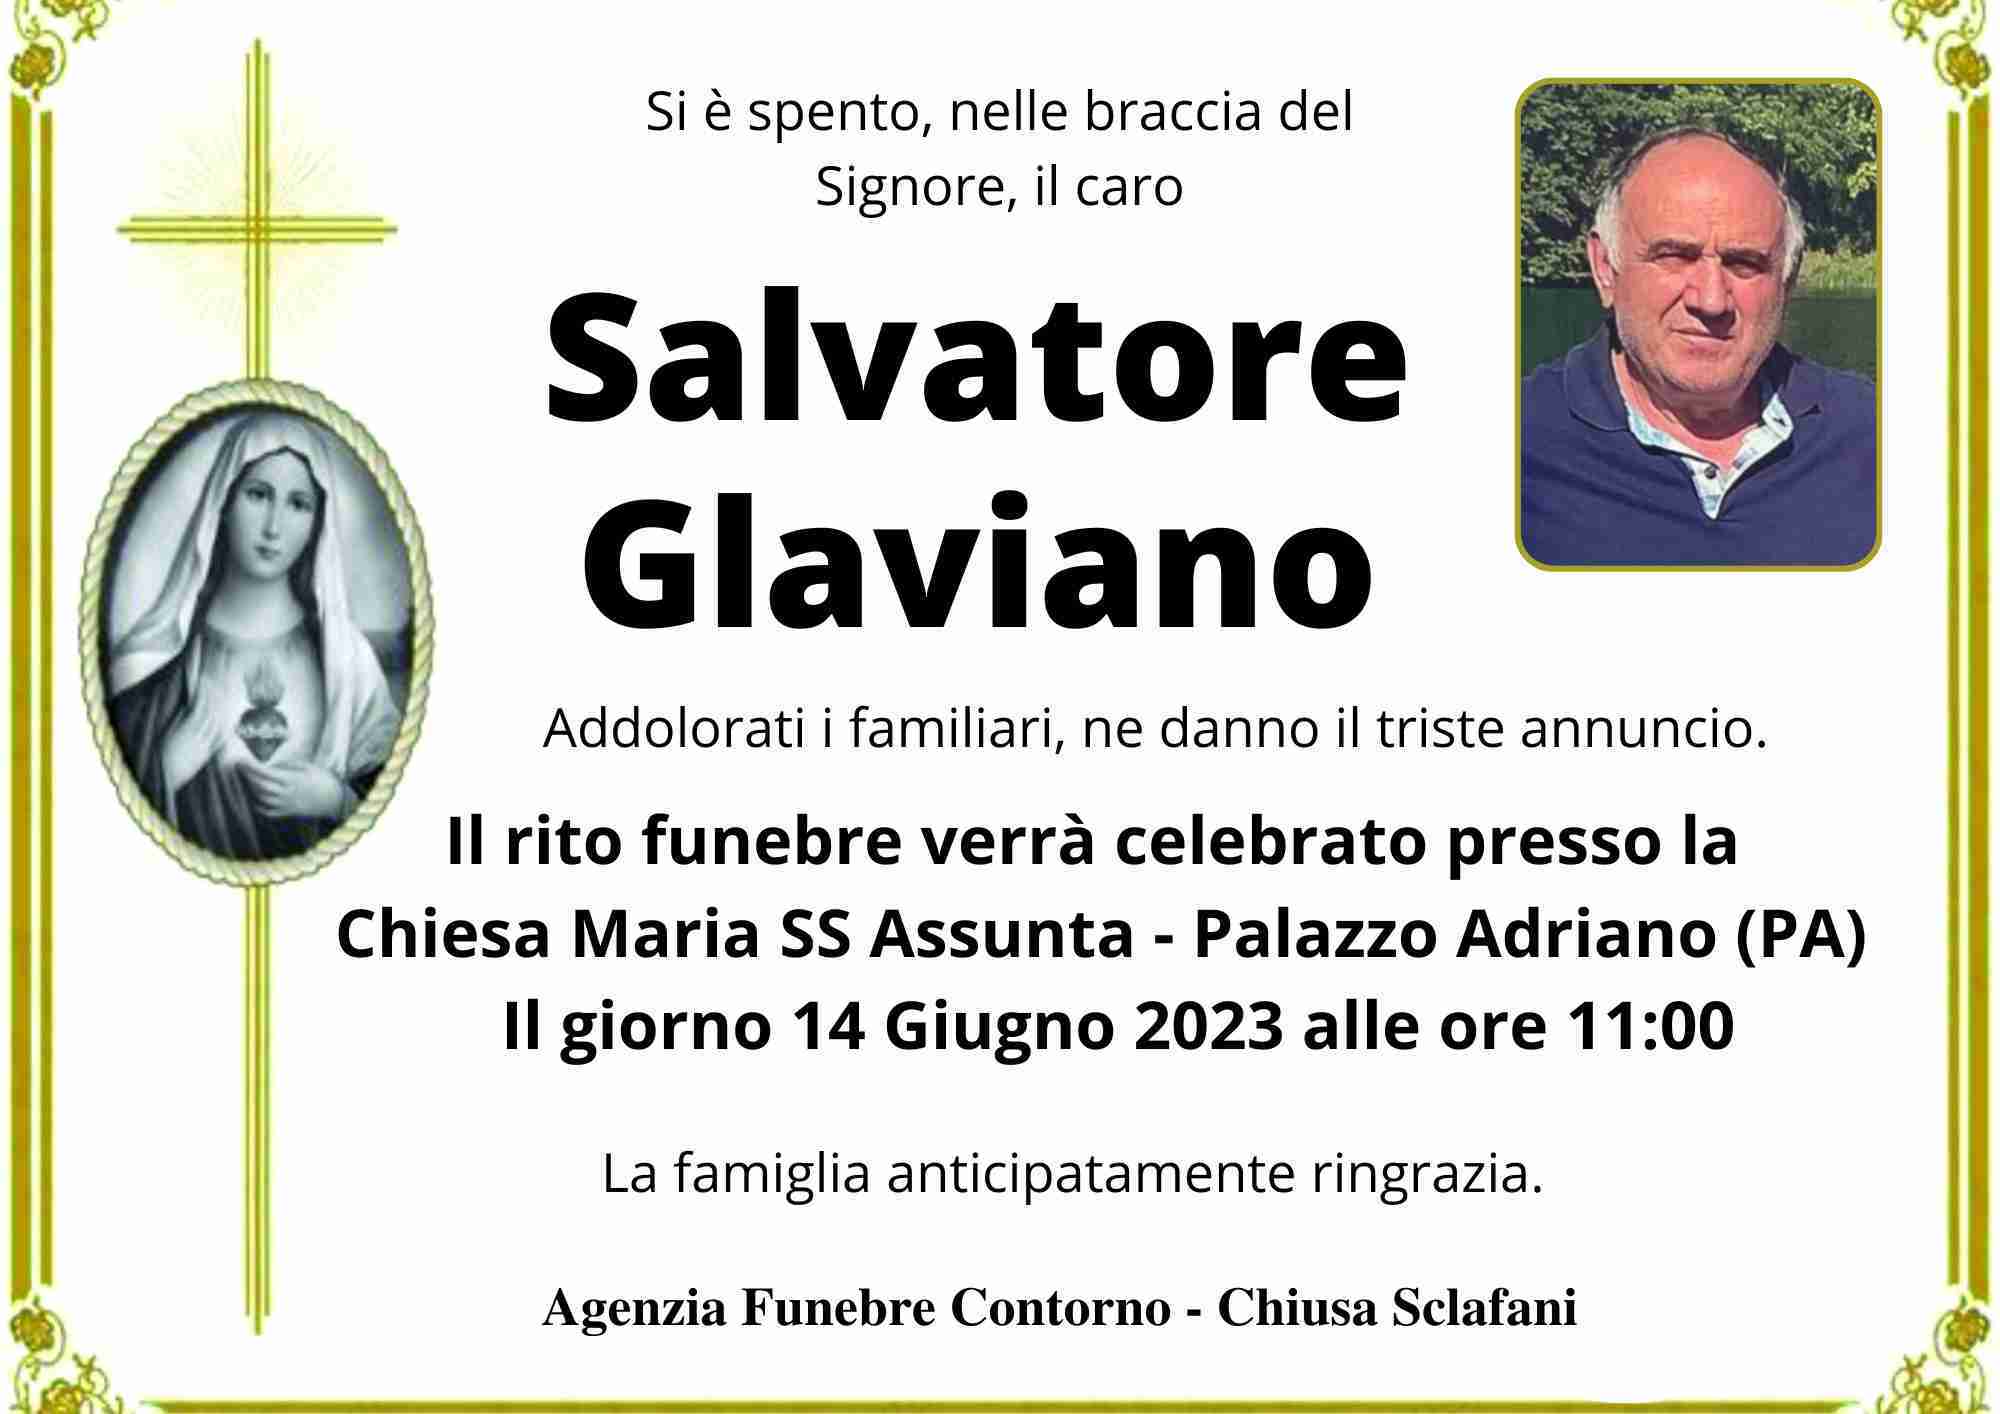 Salvatore Glaviano